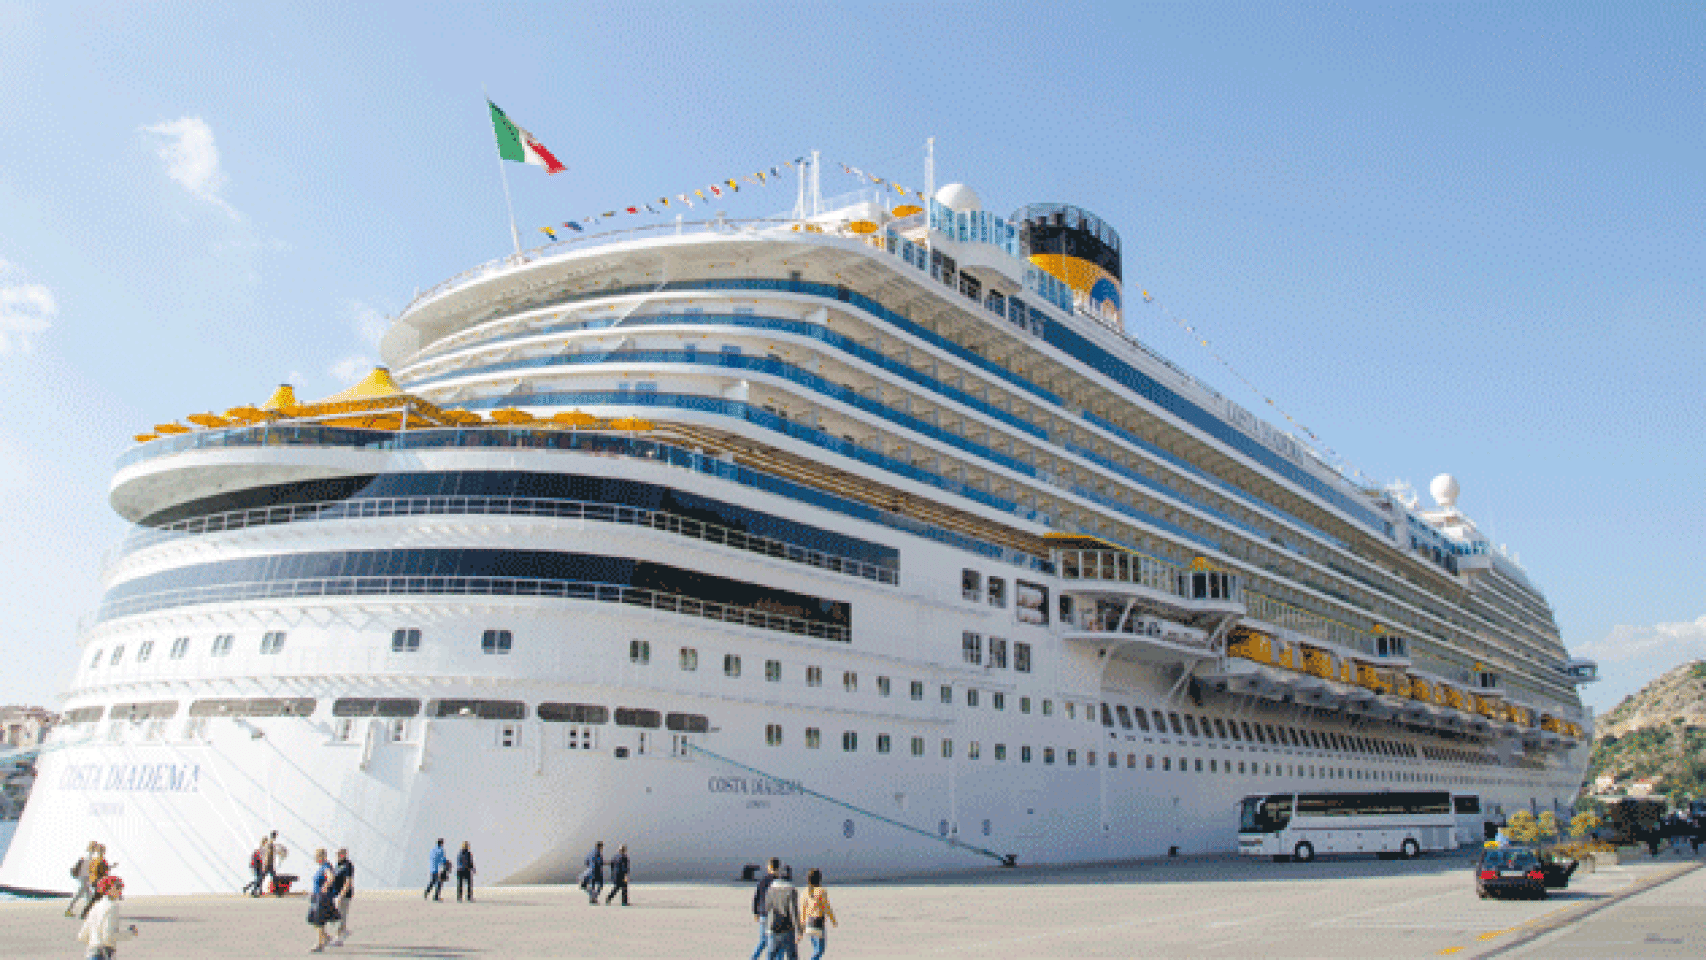 El buque Costa Diadema, donde se ha presentado el acuerdo entre Vueling y Costa / CG